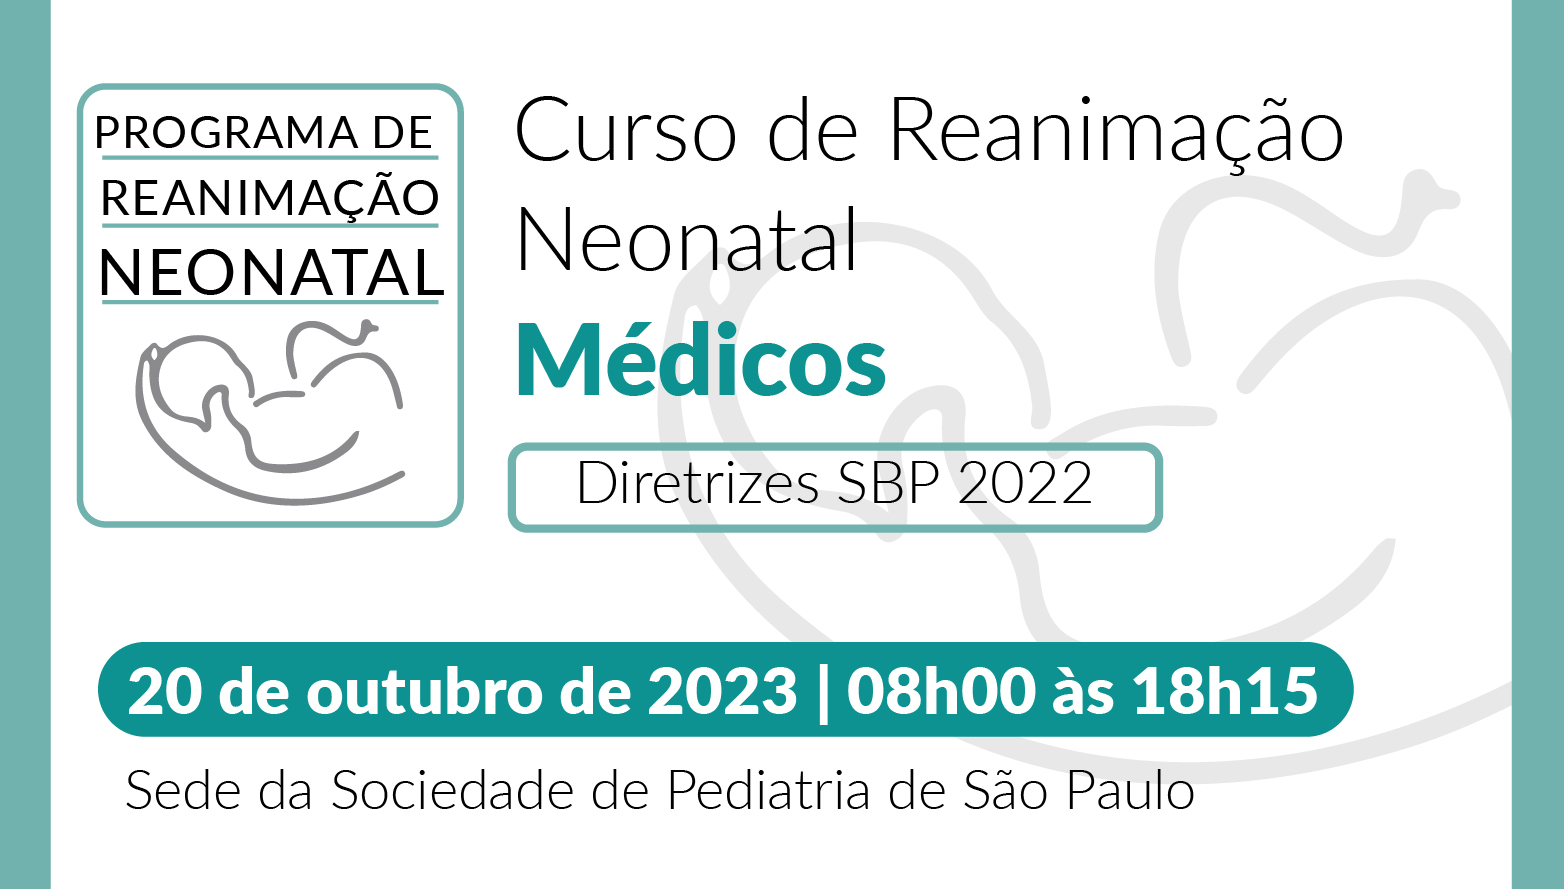 Curso de Reanimação Neonatal para Médicos - Diretrizes SBP 2022 - R49/23